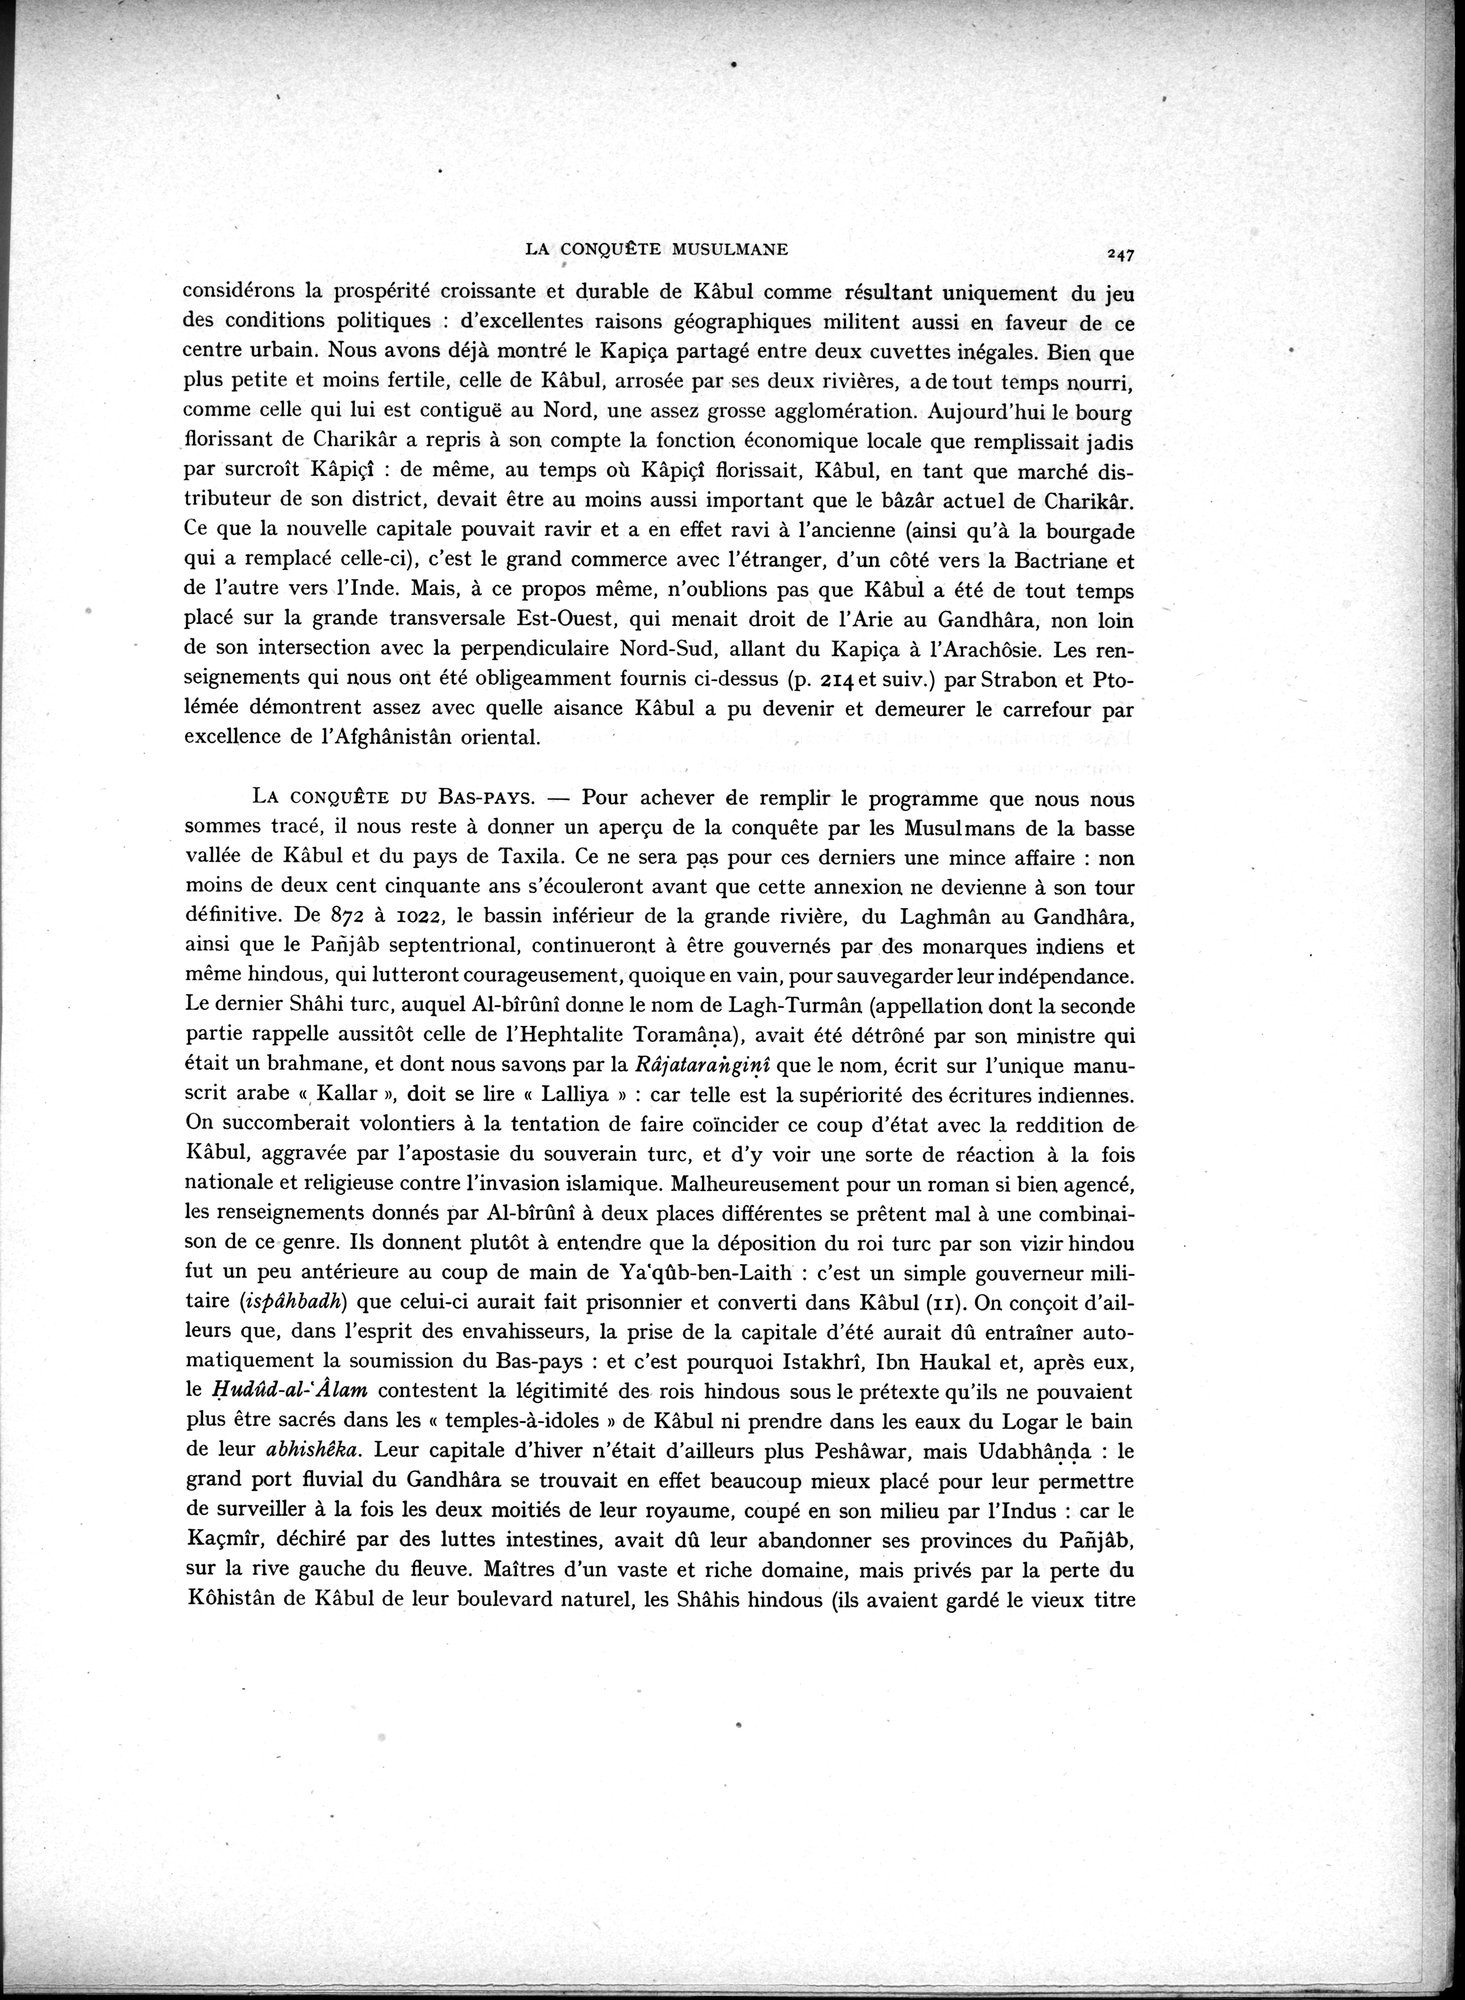 La Vieille Route de l'Inde de Bactres à Taxila : vol.2 / Page 81 (Grayscale High Resolution Image)